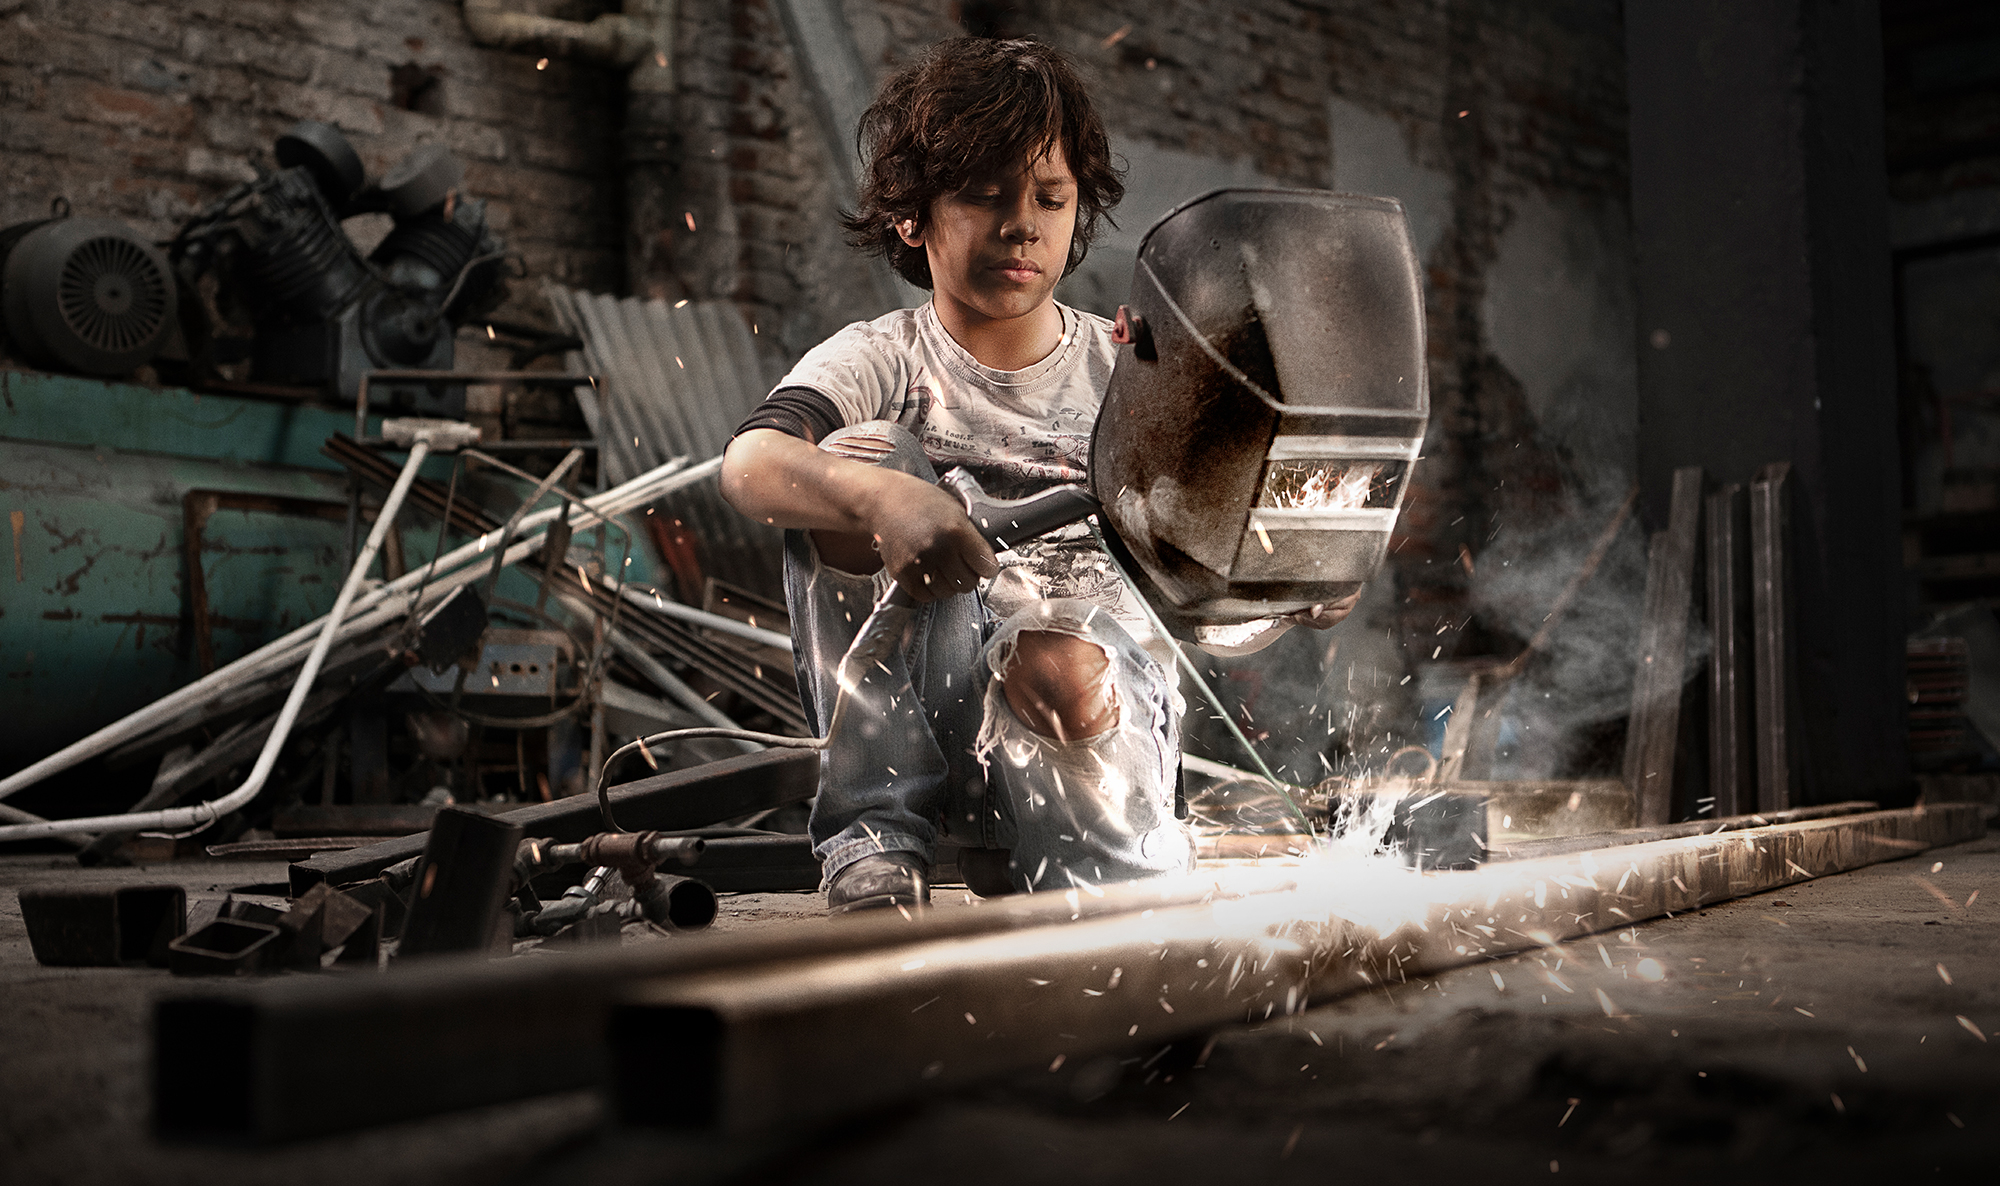 La clave para eliminar el trabajo infantil